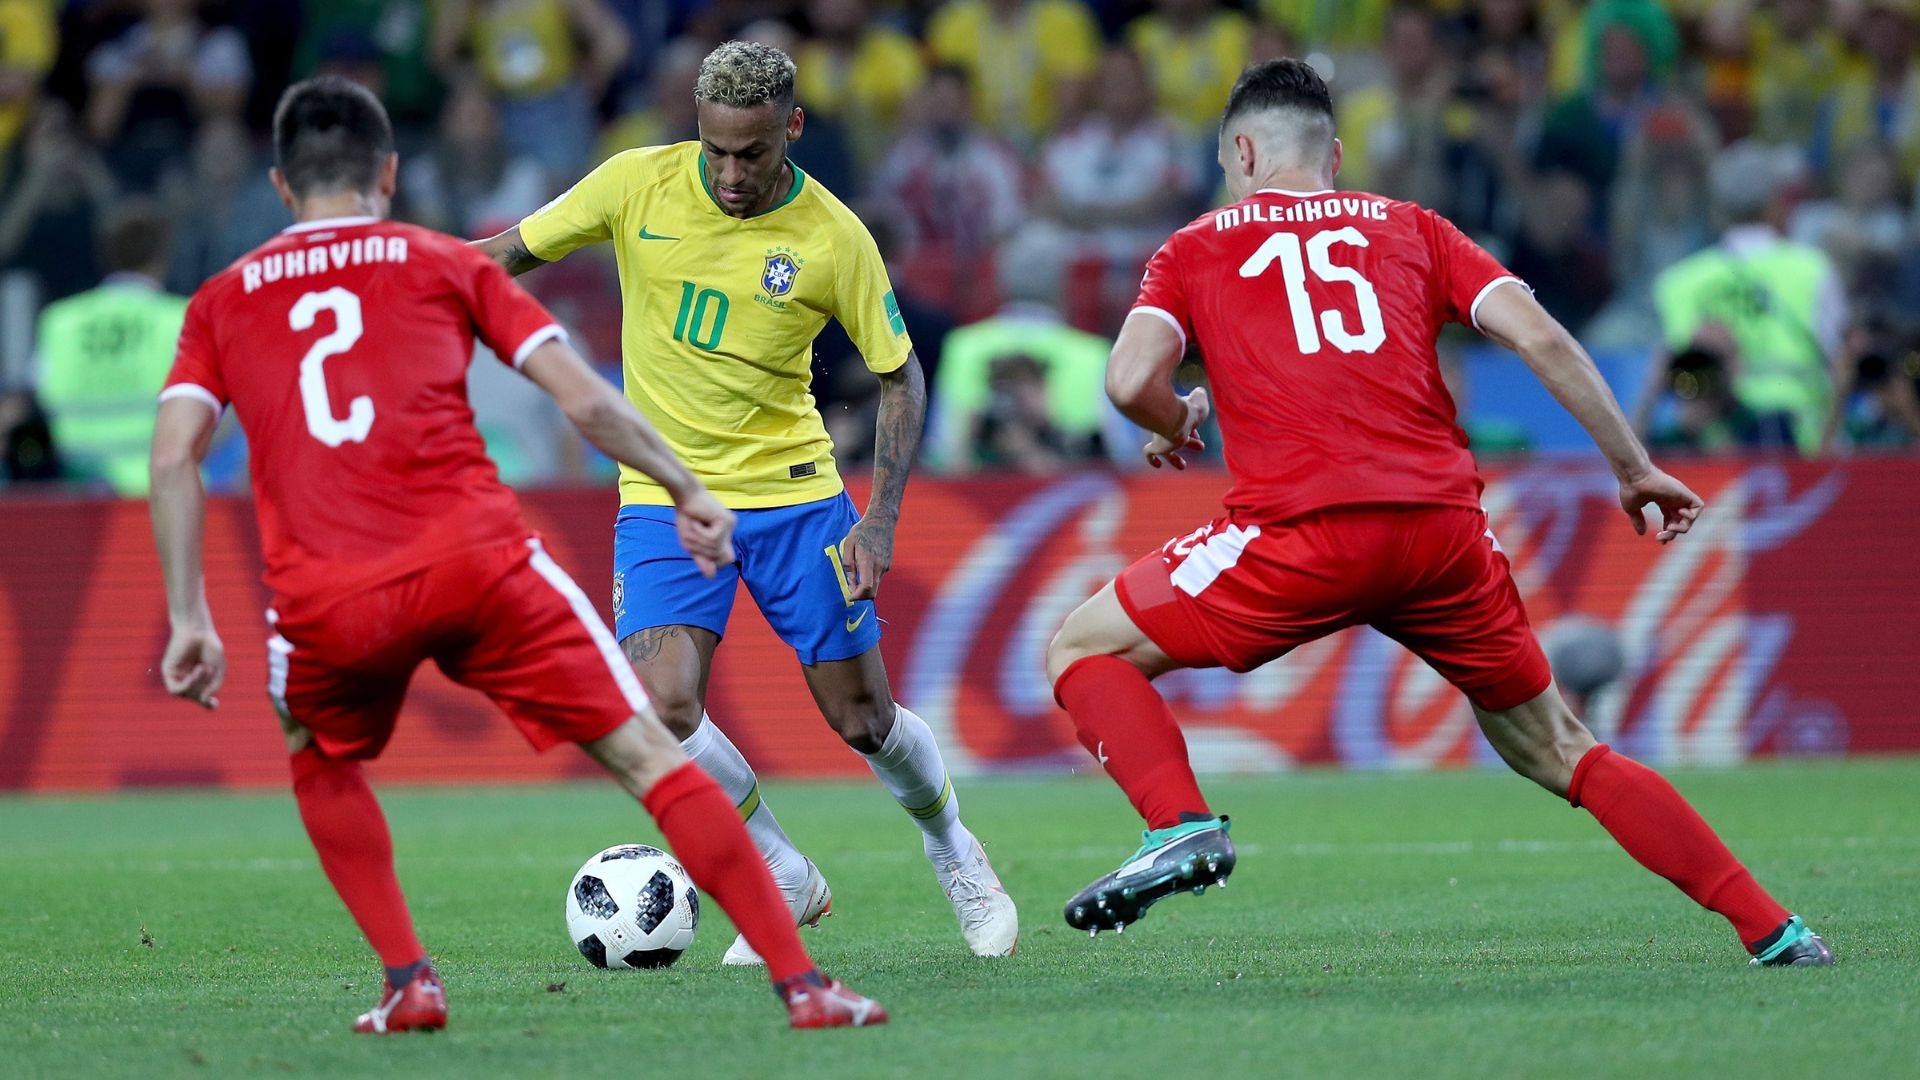 Brasil x Sérvia: horário, onde assistir e próximos jogos na Copa do Mundo